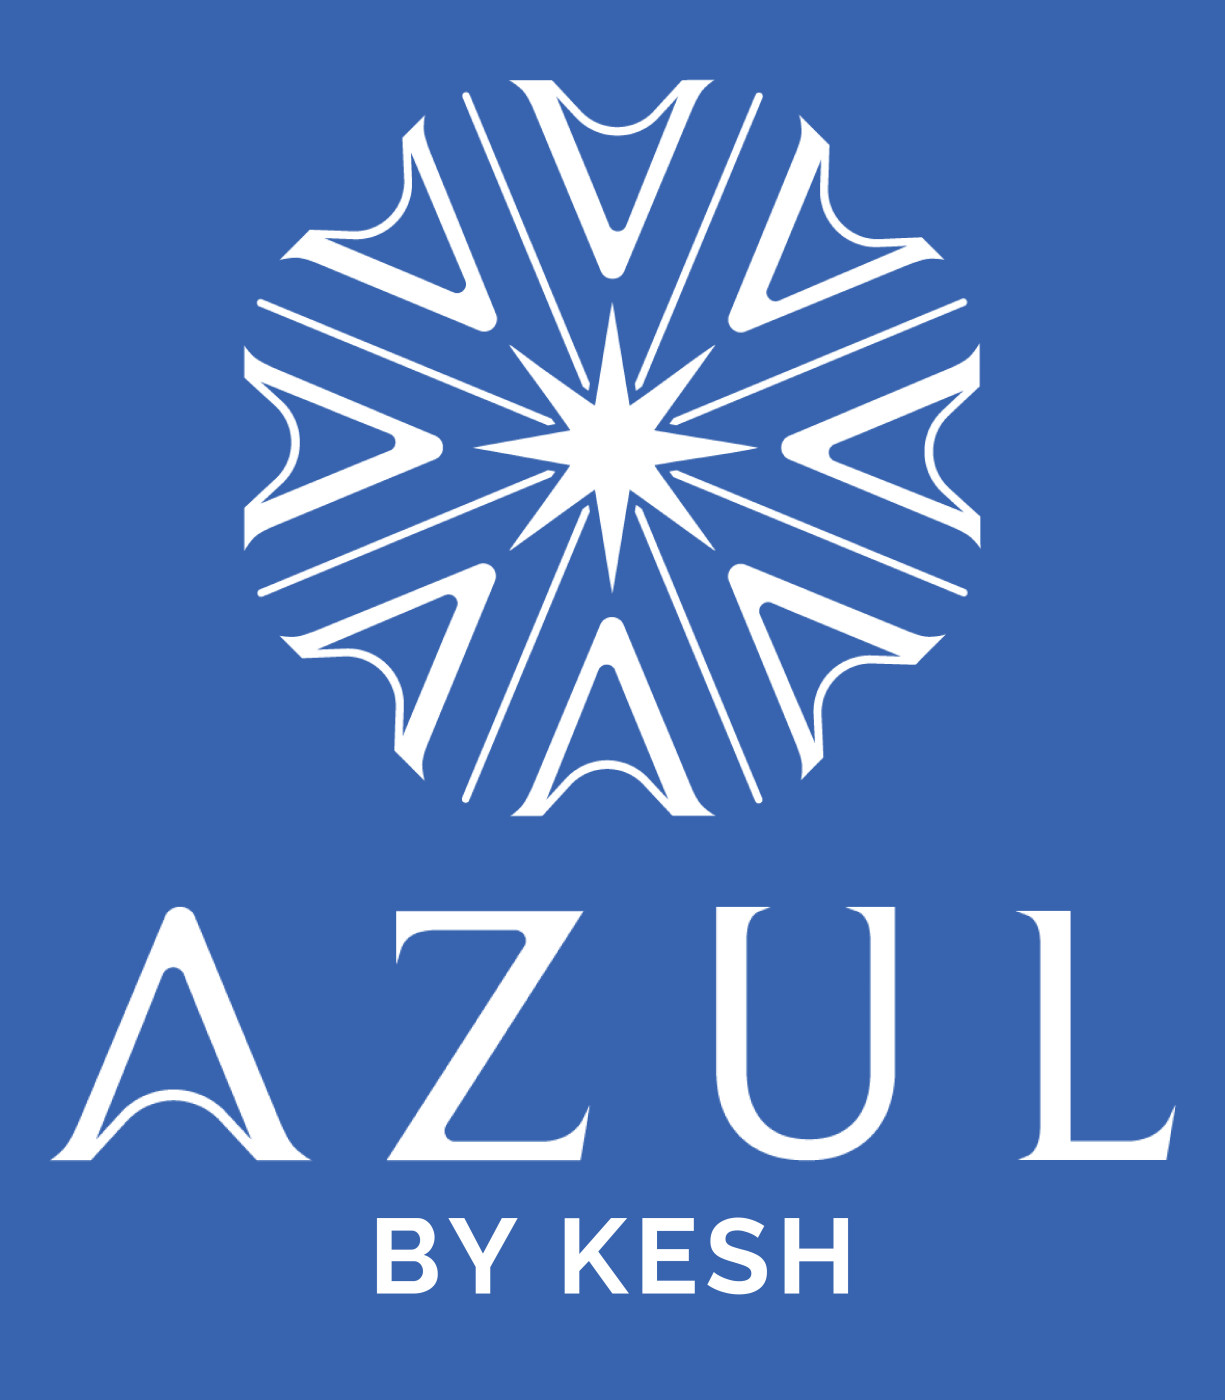 AZUL by Kesh